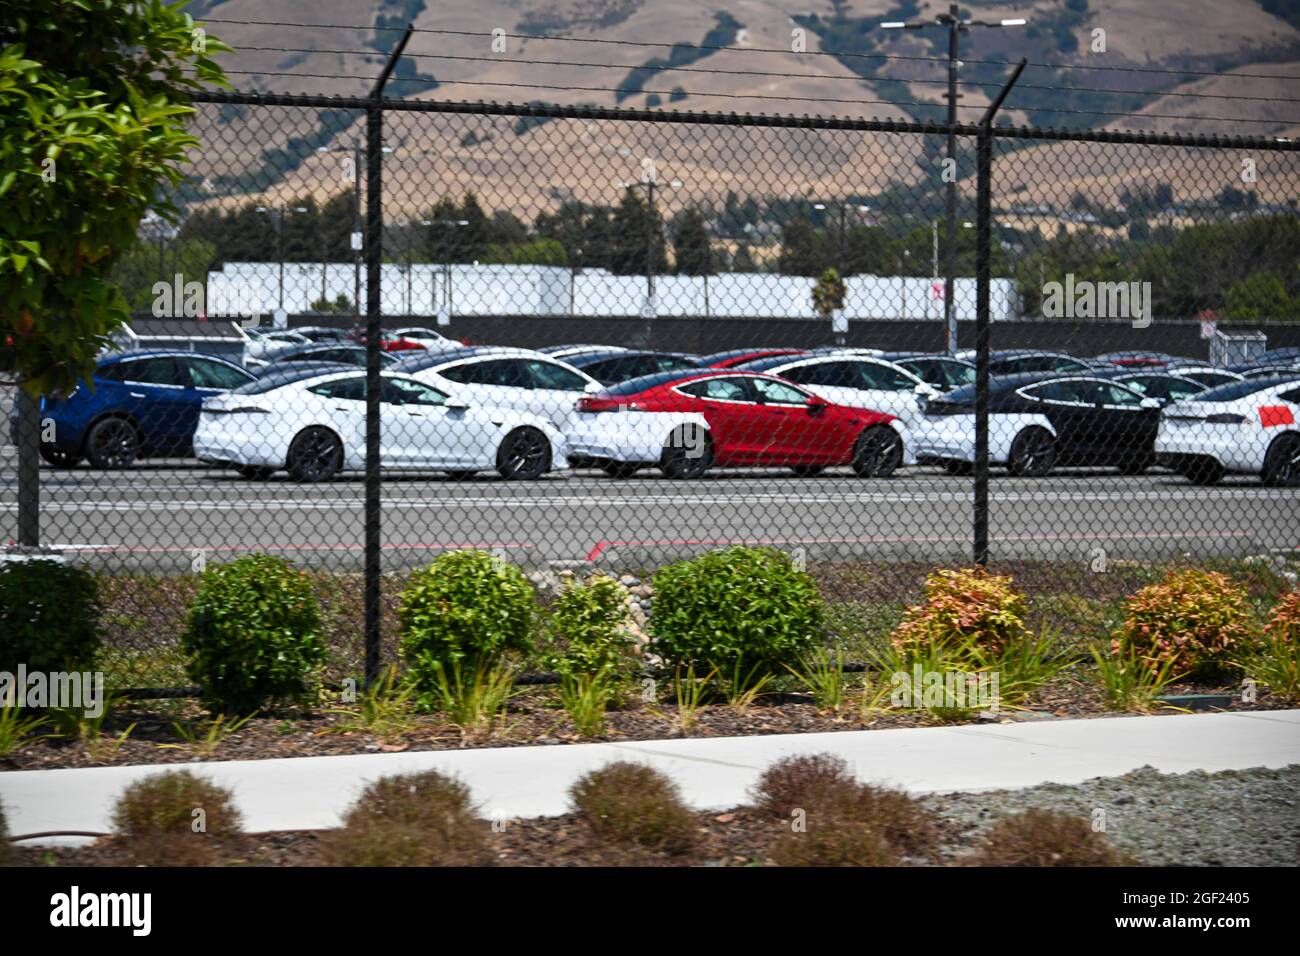 Veicoli Tesla visti presso la fabbrica e la sede centrale Tesla sabato 3 luglio 2021 a Fremont, California (Dylan Stewart/Image of Sport) Foto Stock